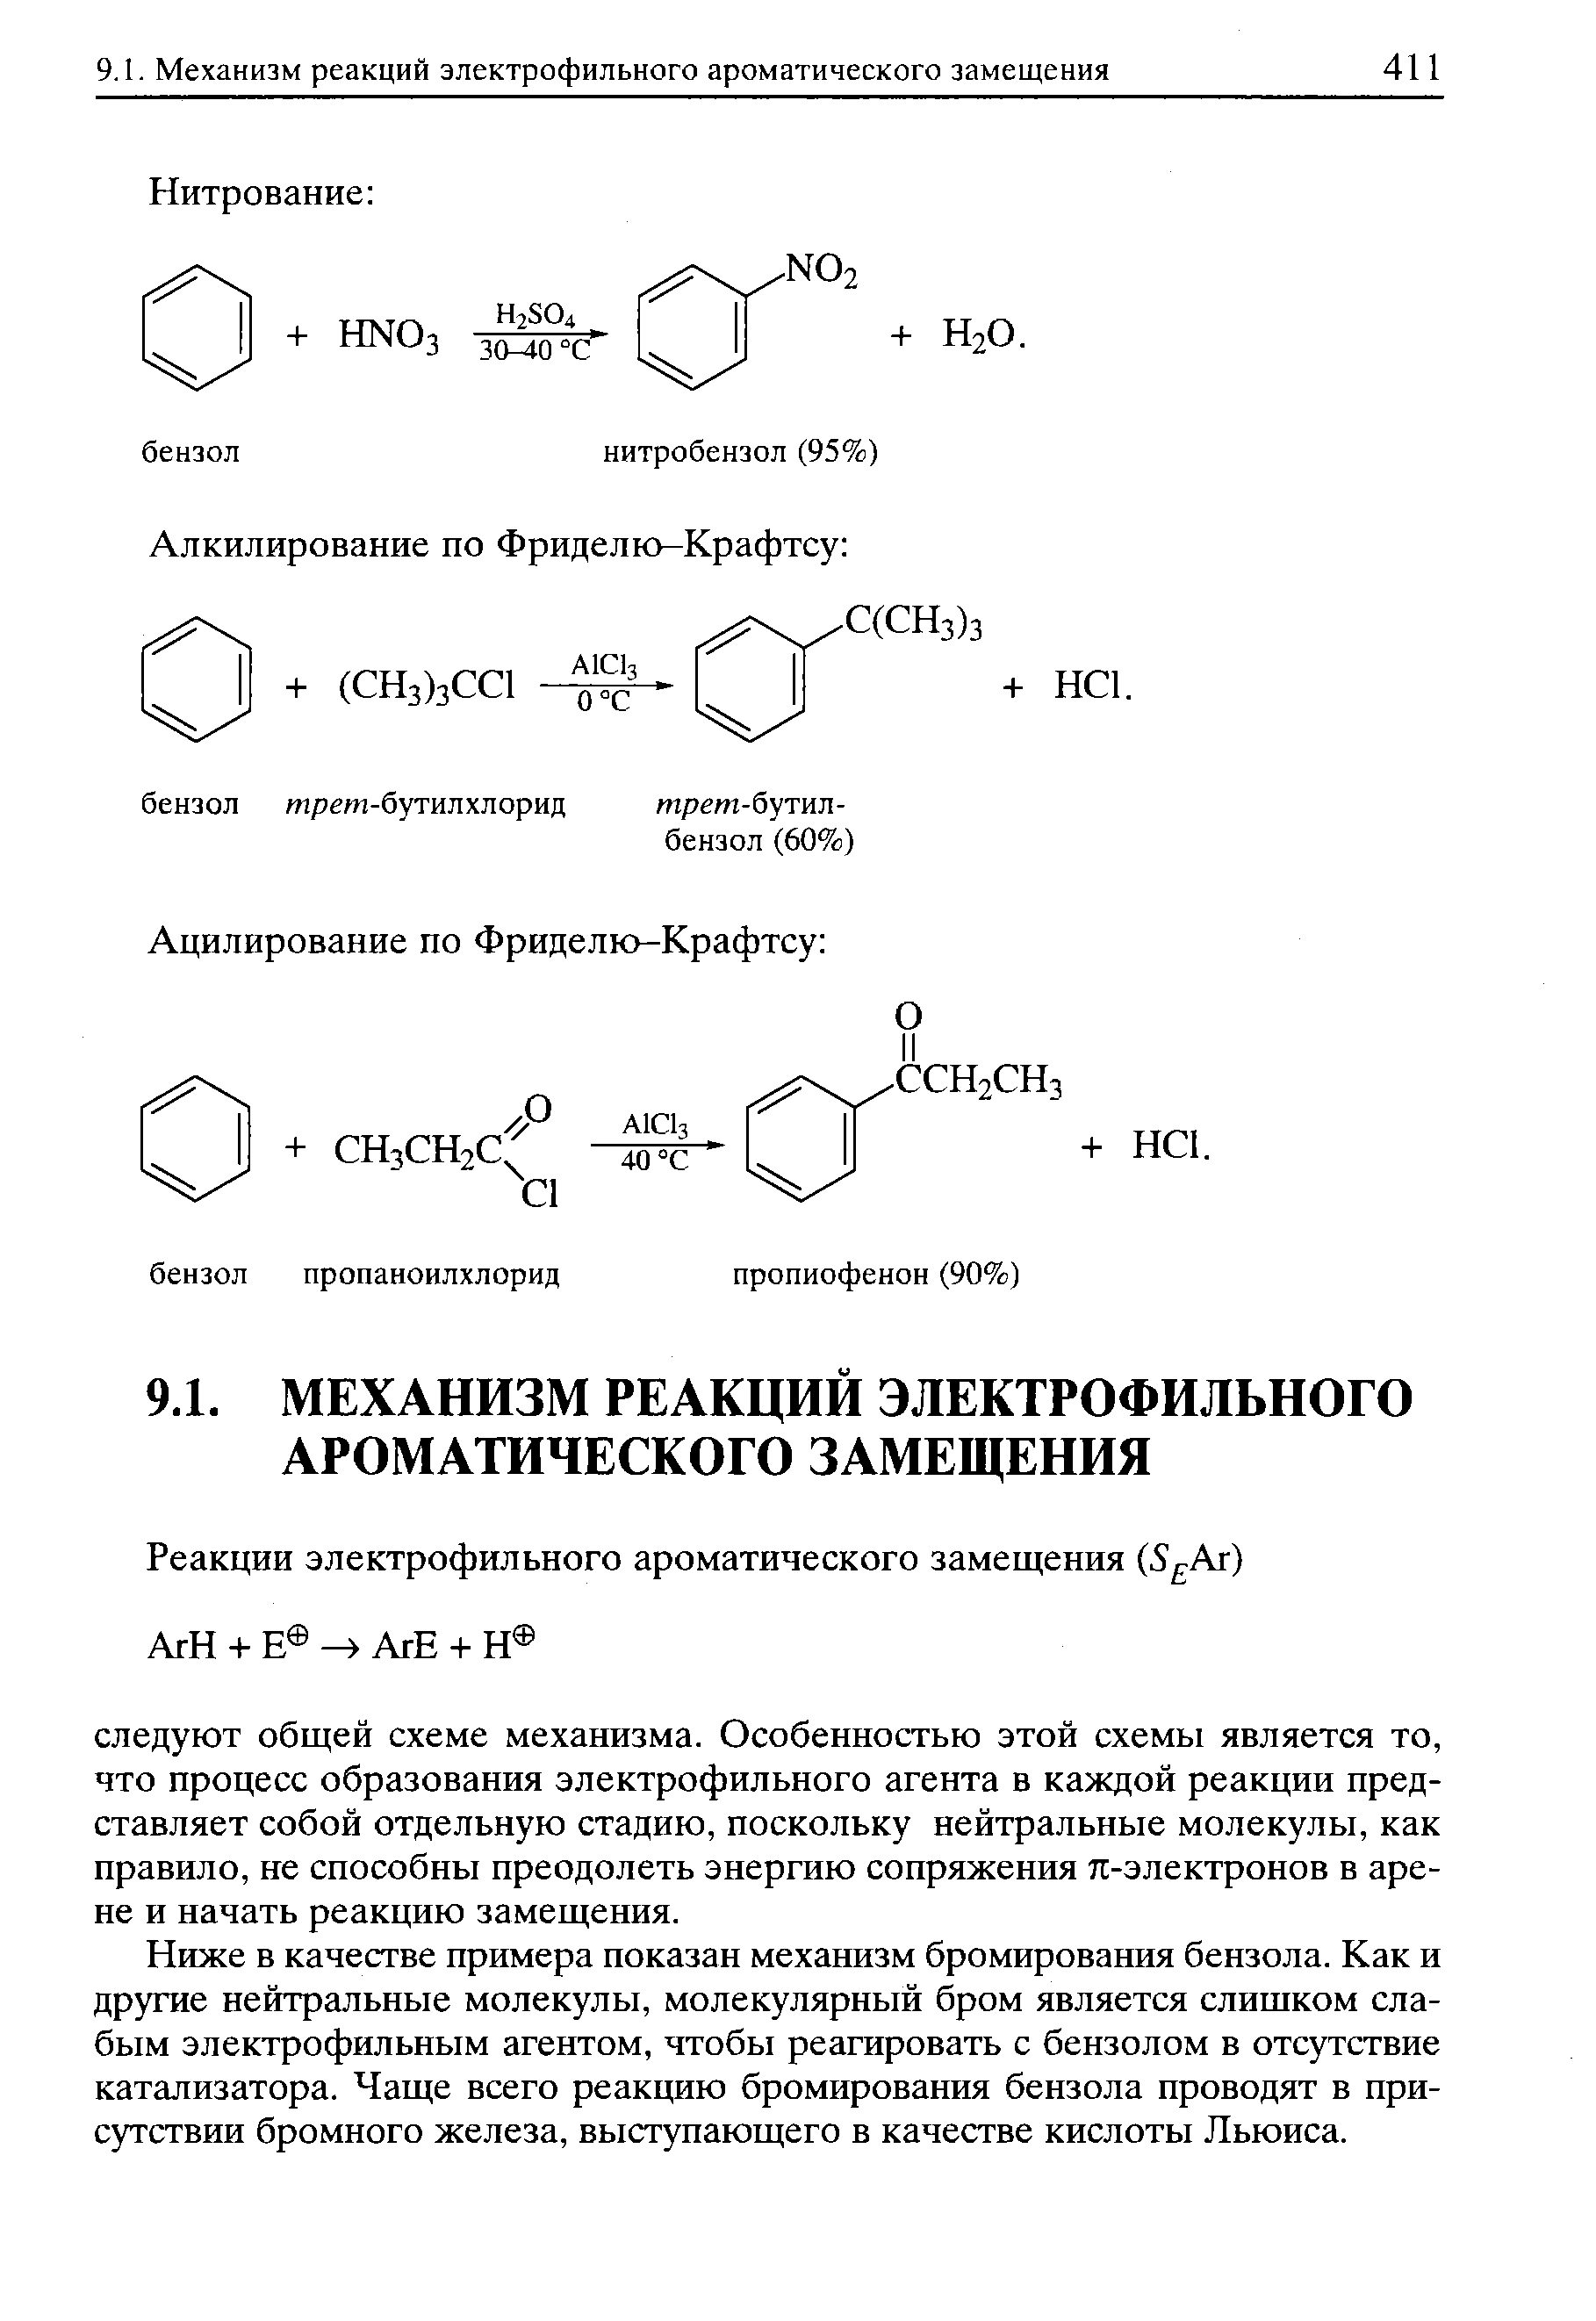 Ниже в качестве примера показан механизм бромирования бензола. Как и другие нейтральные молекулы, молекулярный бром является слишком слабым электрофильным агентом, чтобы реагировать с бензолом в отсутствие катализатора. Чаще всего реакцию бромирования бензола проводят в присутствии бромного железа, выступающего в качестве кислоты Льюиса.